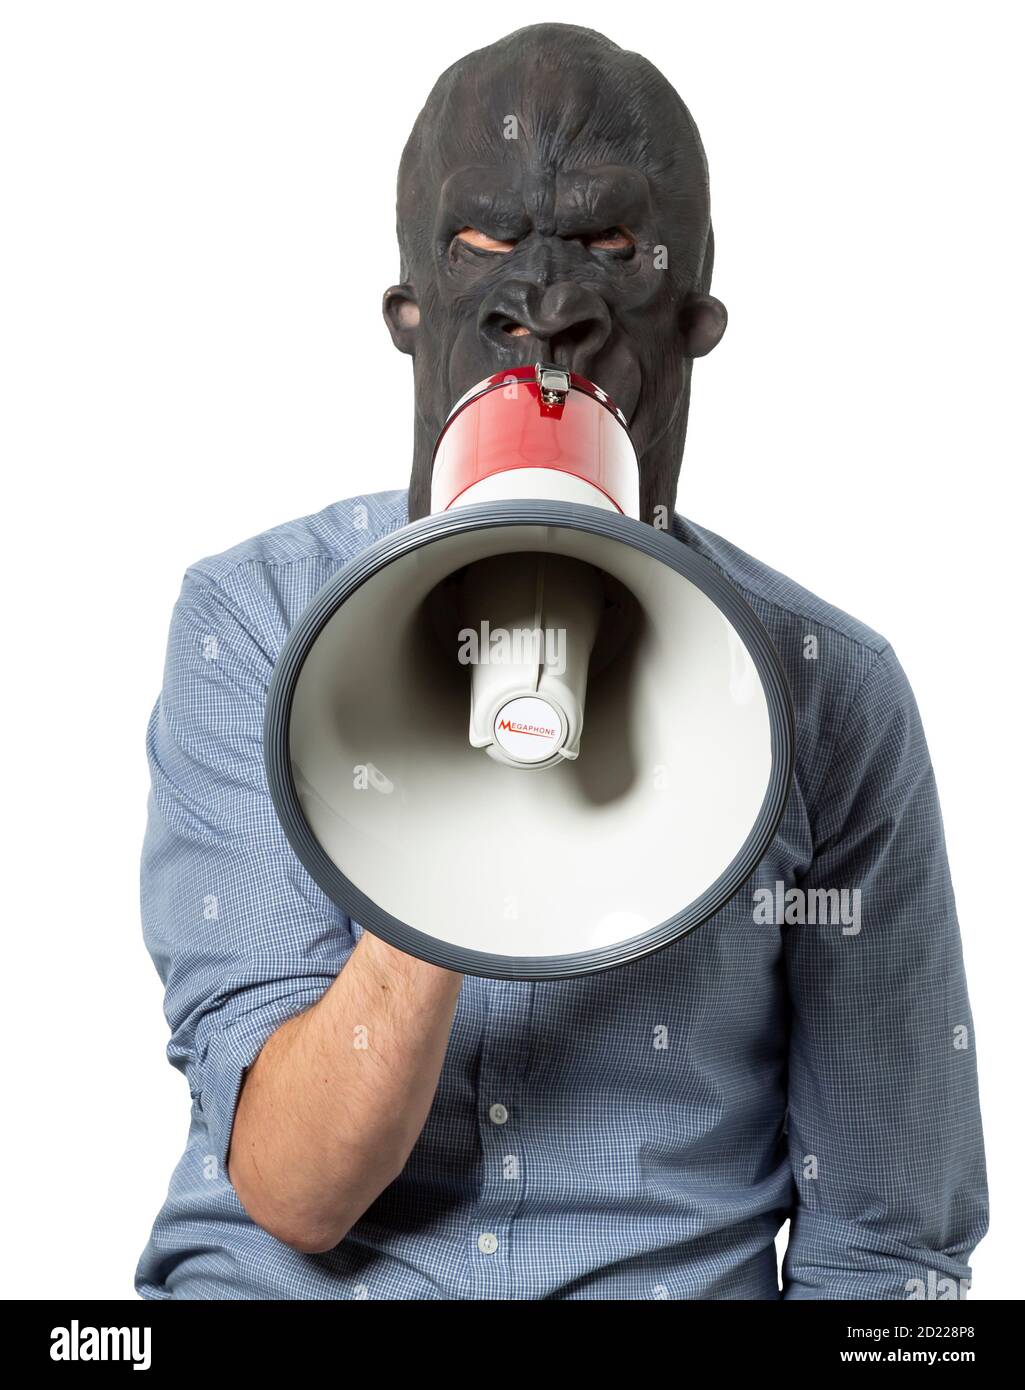 Homme portant un masque de gorille parlant sur le mégaphone. Orienté vers l'avant. Découpe isolée sur fond blanc. Prise de vue moyenne. Banque D'Images